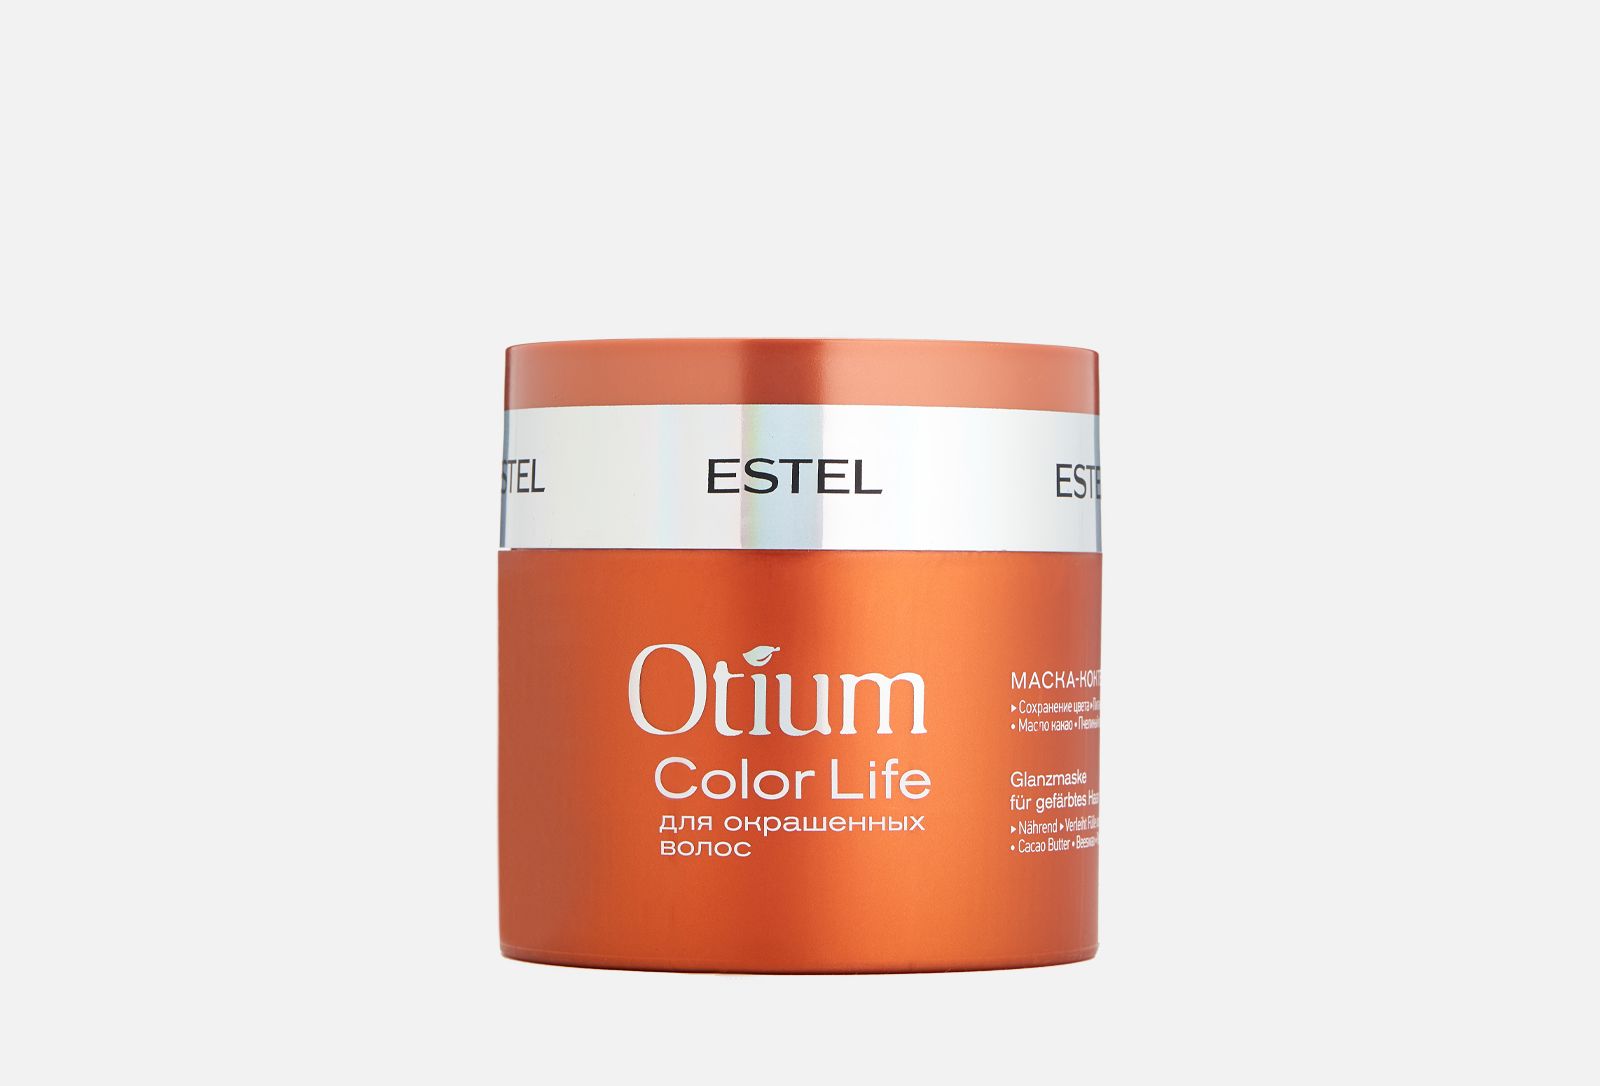 Эстель восстановить волосы. Маска для волос Эстель Otium Miracle Revive. Estel Otium Color Life маска. Маска Эстель отиум Миракл. Estel/ маска-коктейль для окрашенных волос Otium Color Life (300 мл).